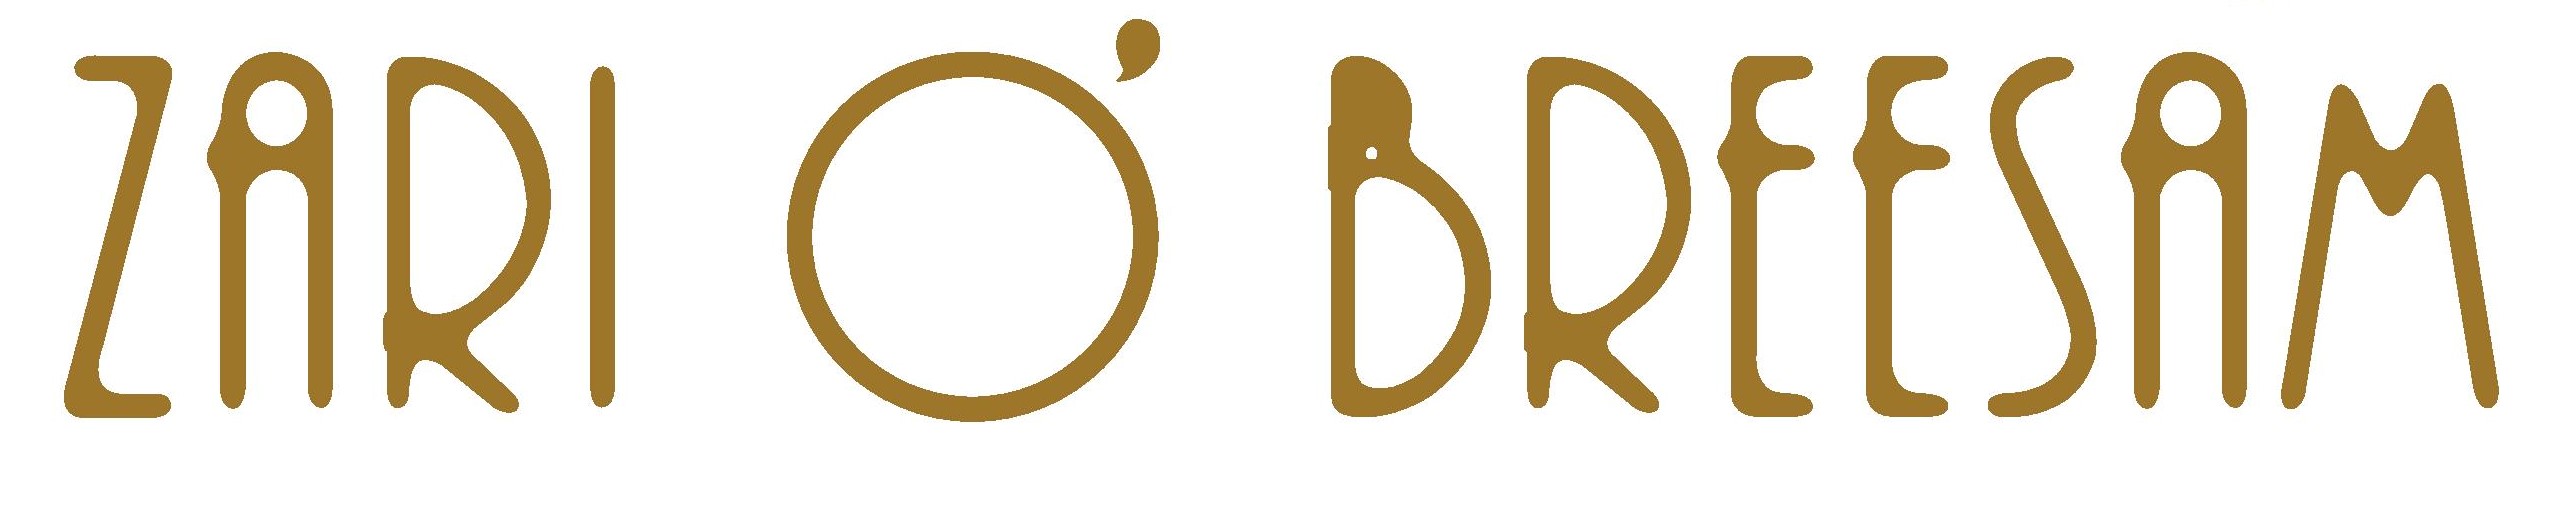 Image-logo